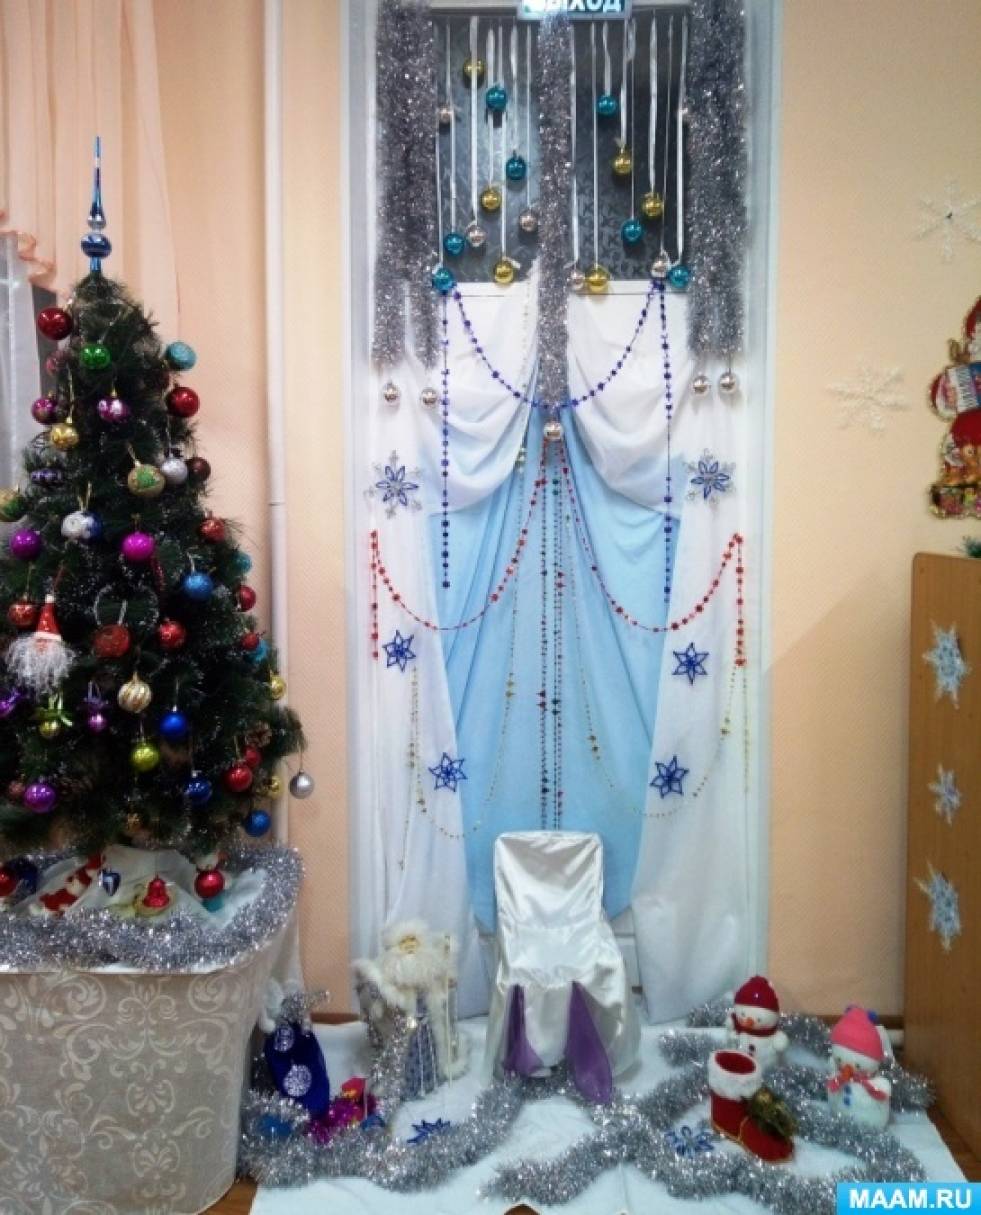 Благое дело. В Днепровском районе Киева девелопер отремонтировал детский сад